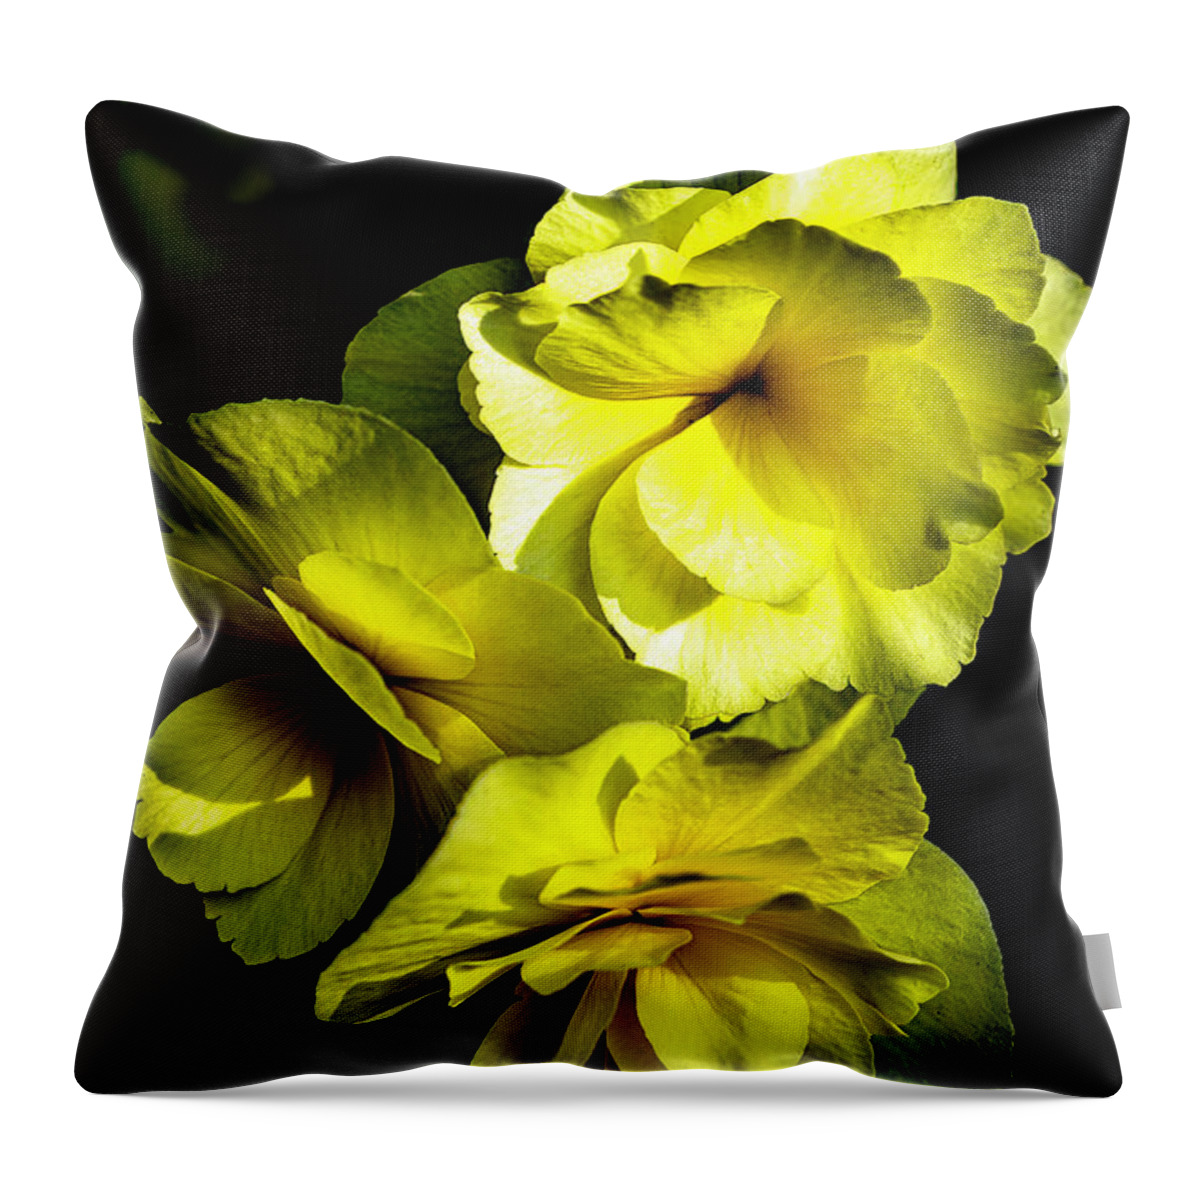 Flower Throw Pillow featuring the photograph Yellow Beauty by Ken Frischkorn